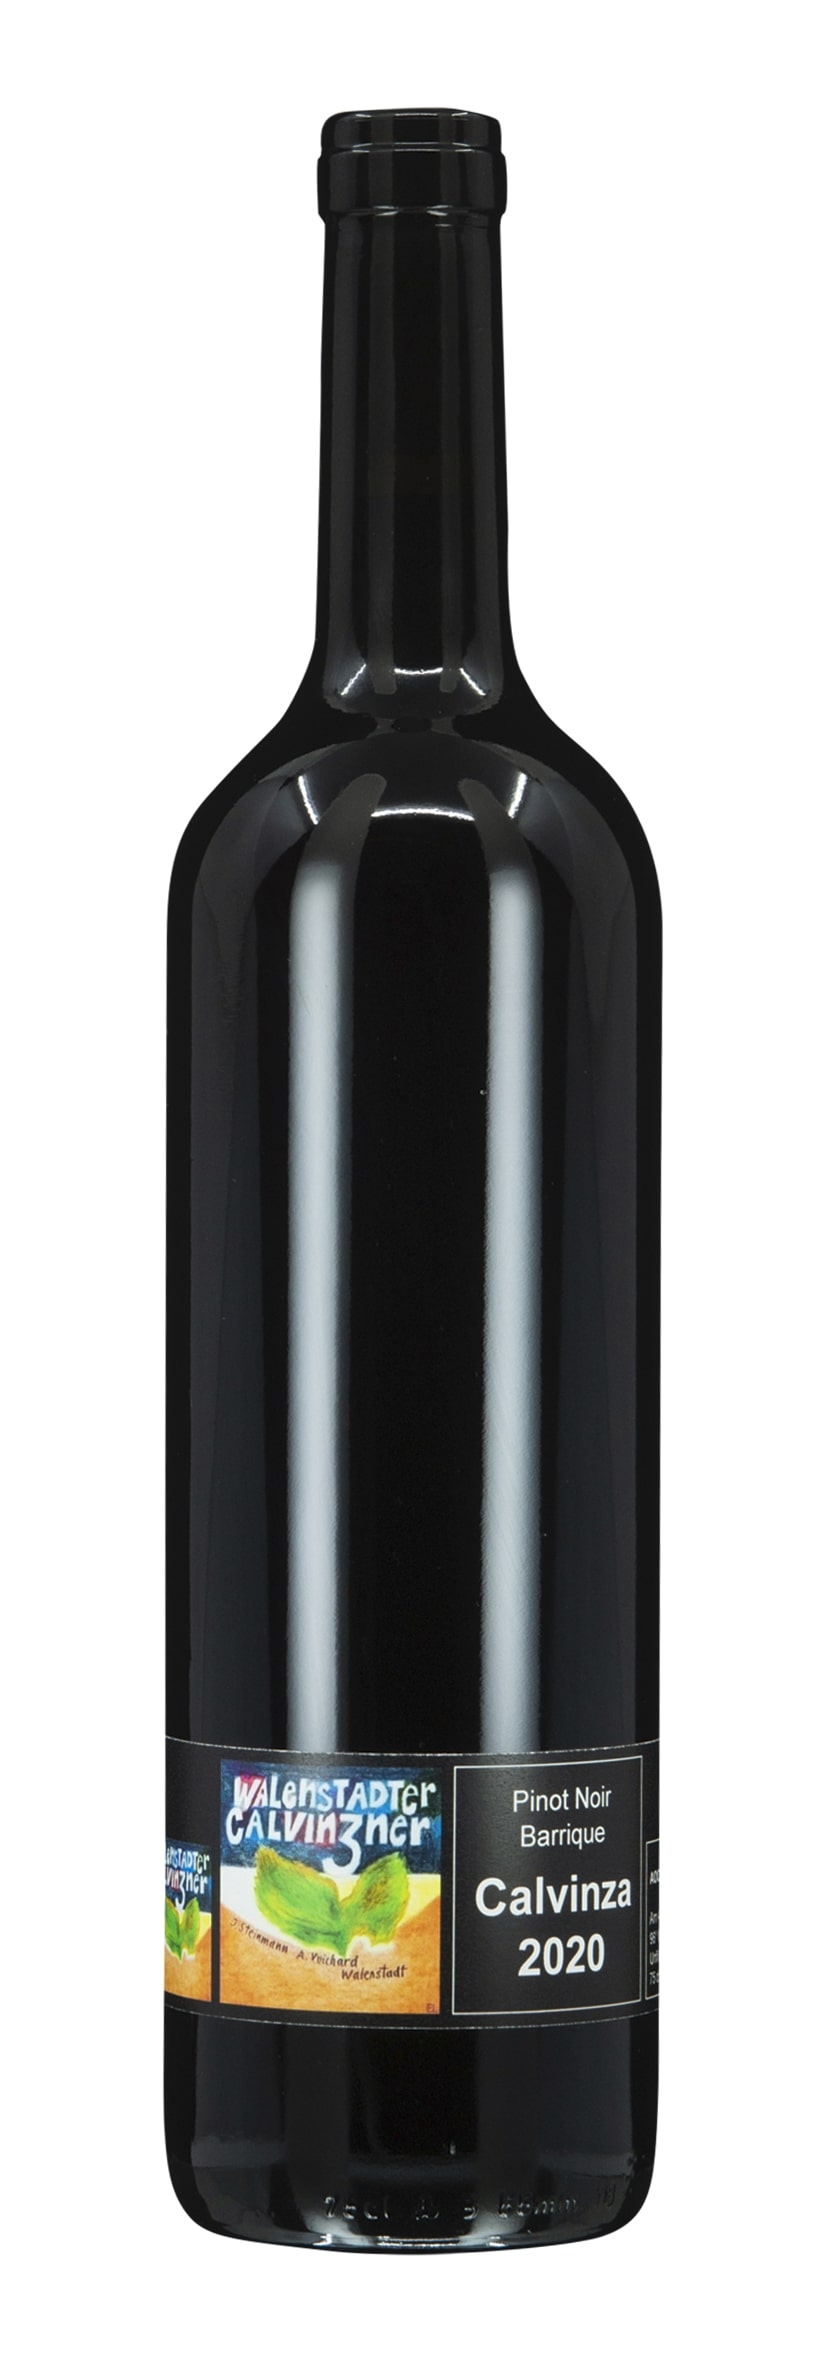 St. Gallen AOC Pinot Noir Barrique 2020